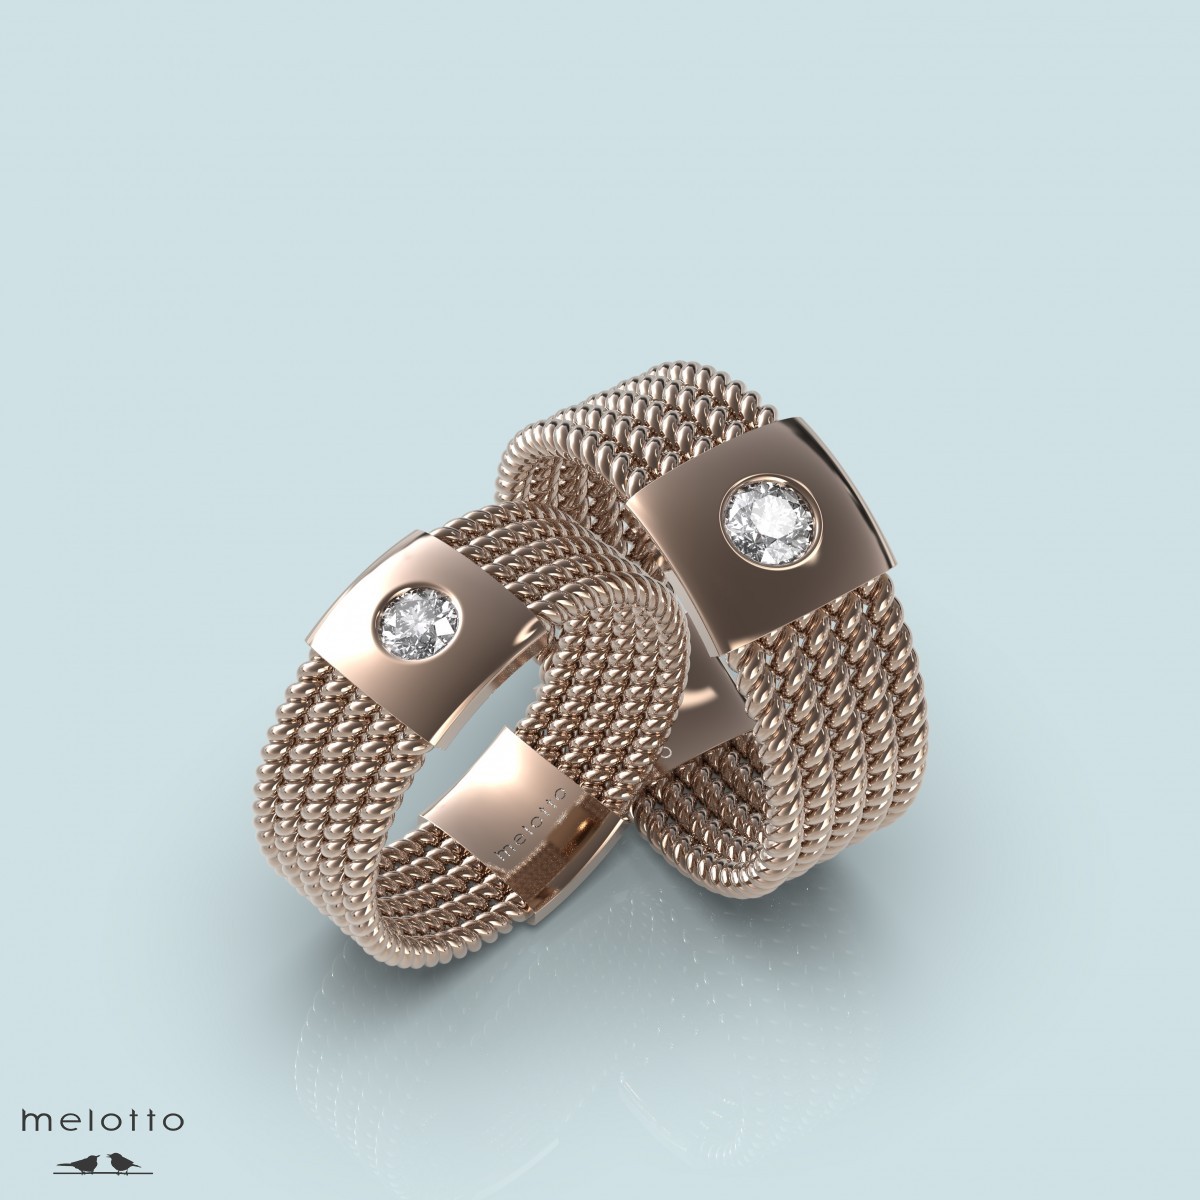 Обручальные кольца дизайн "Melotto"